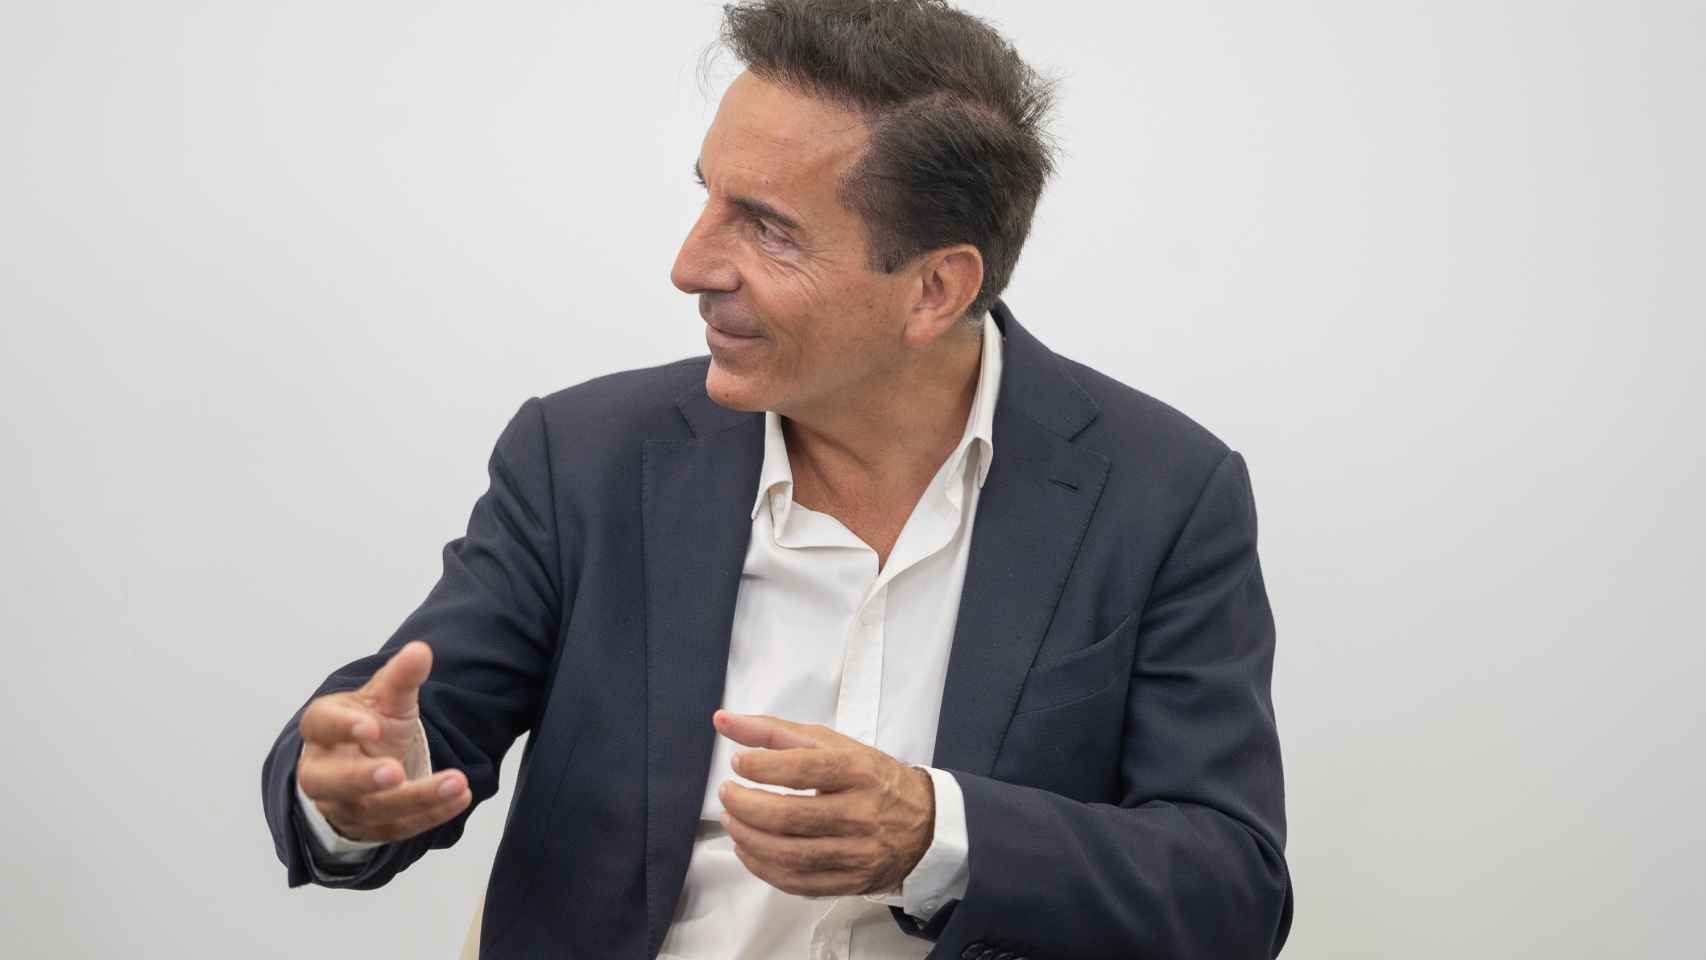 Óscar Méndez Soto, CEO y socio fundador de Stratio. FOTO: Cristina Villarino.